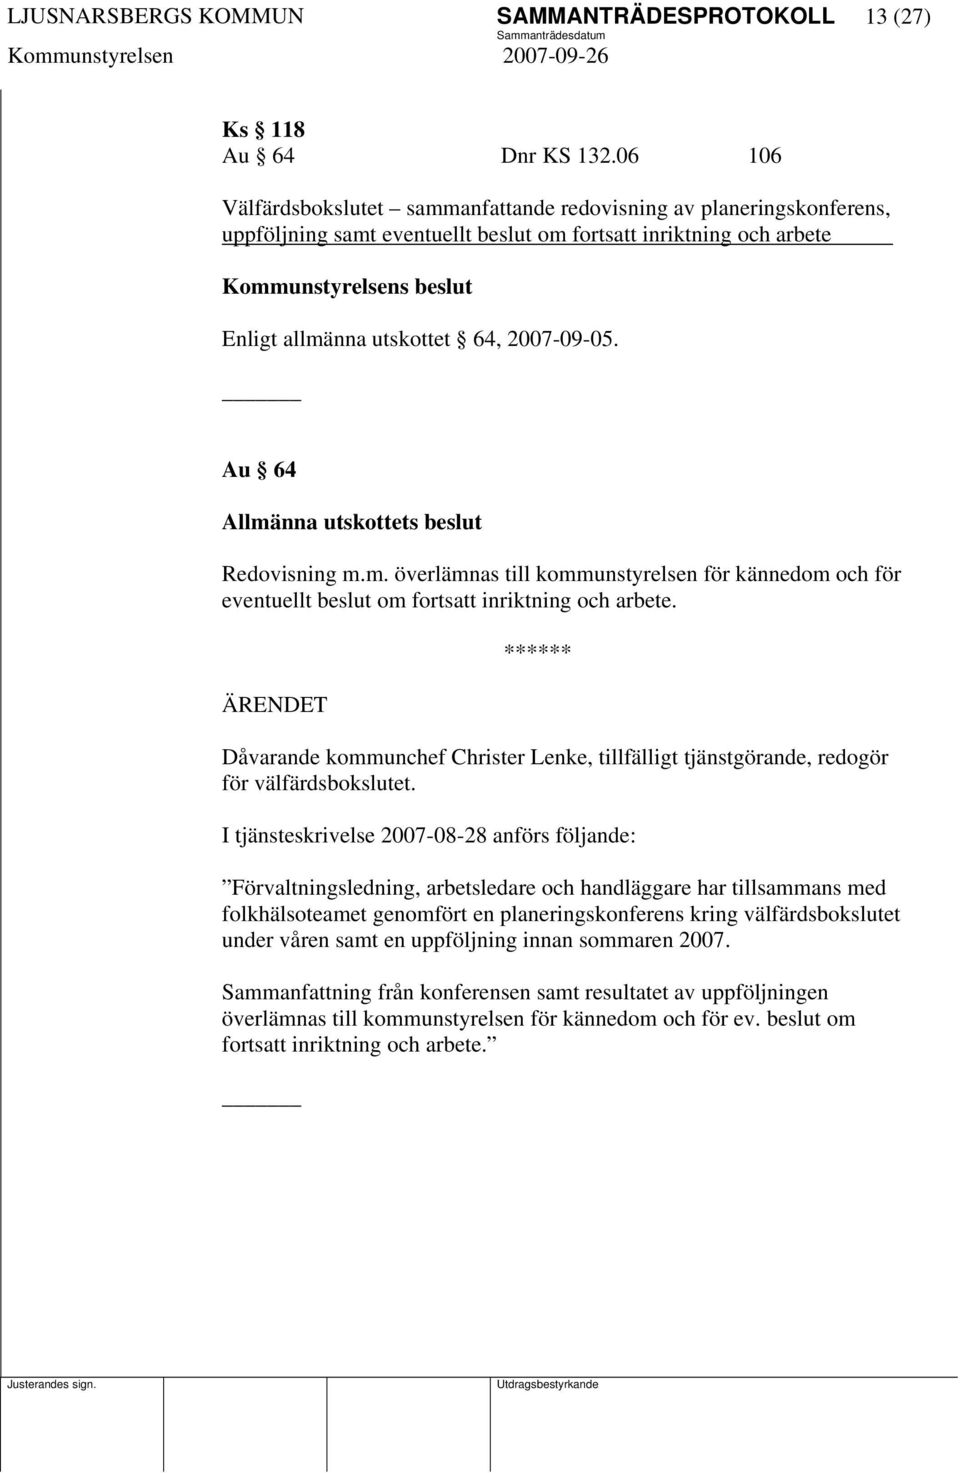 2007-09-05. Au 64 Allmänna utskottets beslut Redovisning m.m. överlämnas till kommunstyrelsen för kännedom och för eventuellt beslut om fortsatt inriktning och arbete.